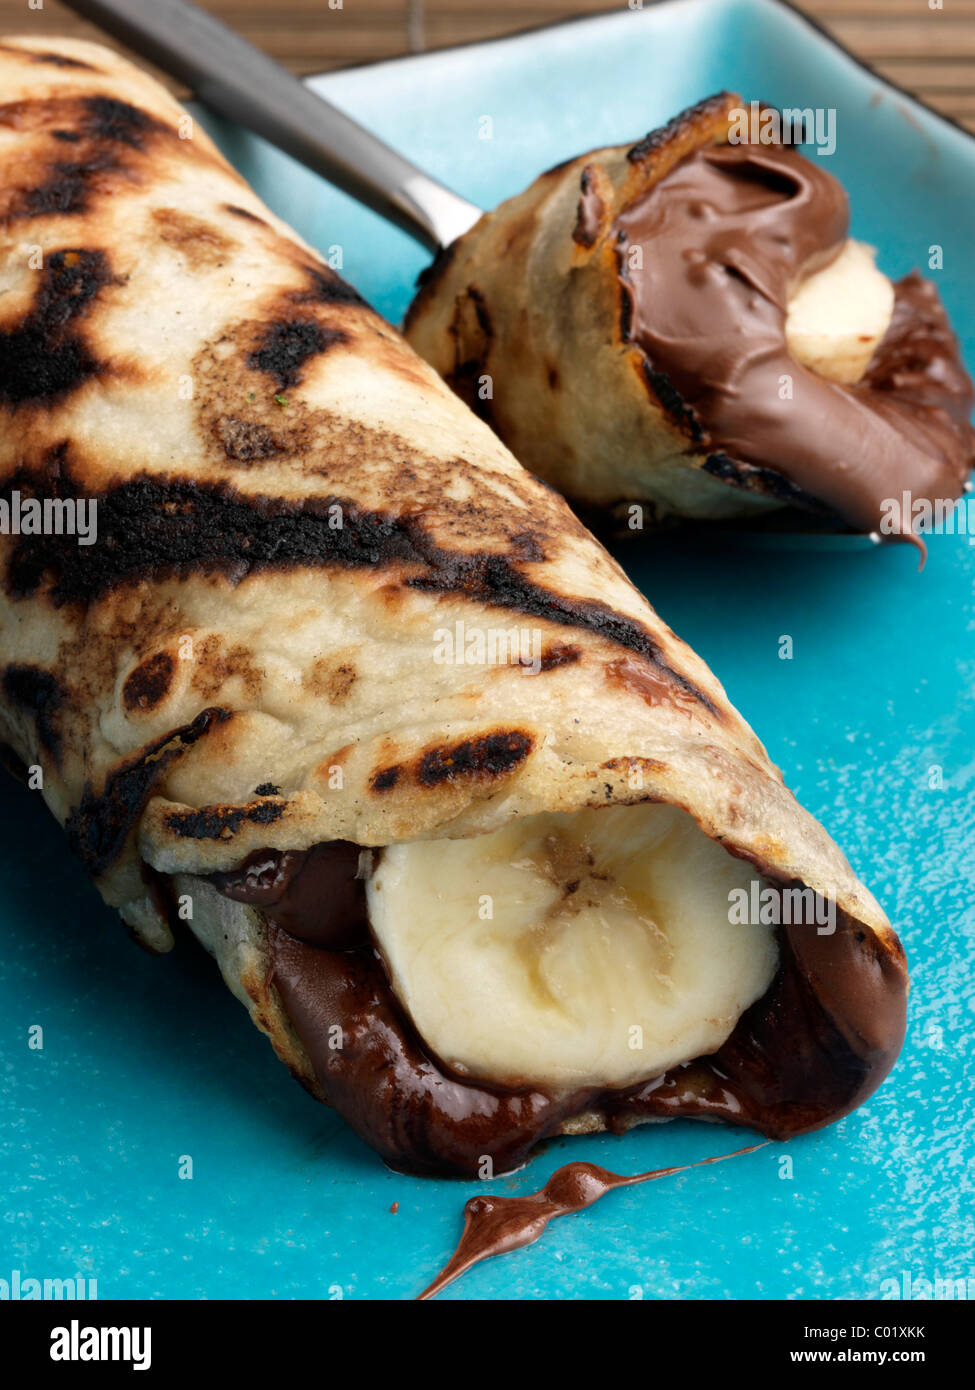 Chocolate banana pancake vegetarian dessert Stock Photo